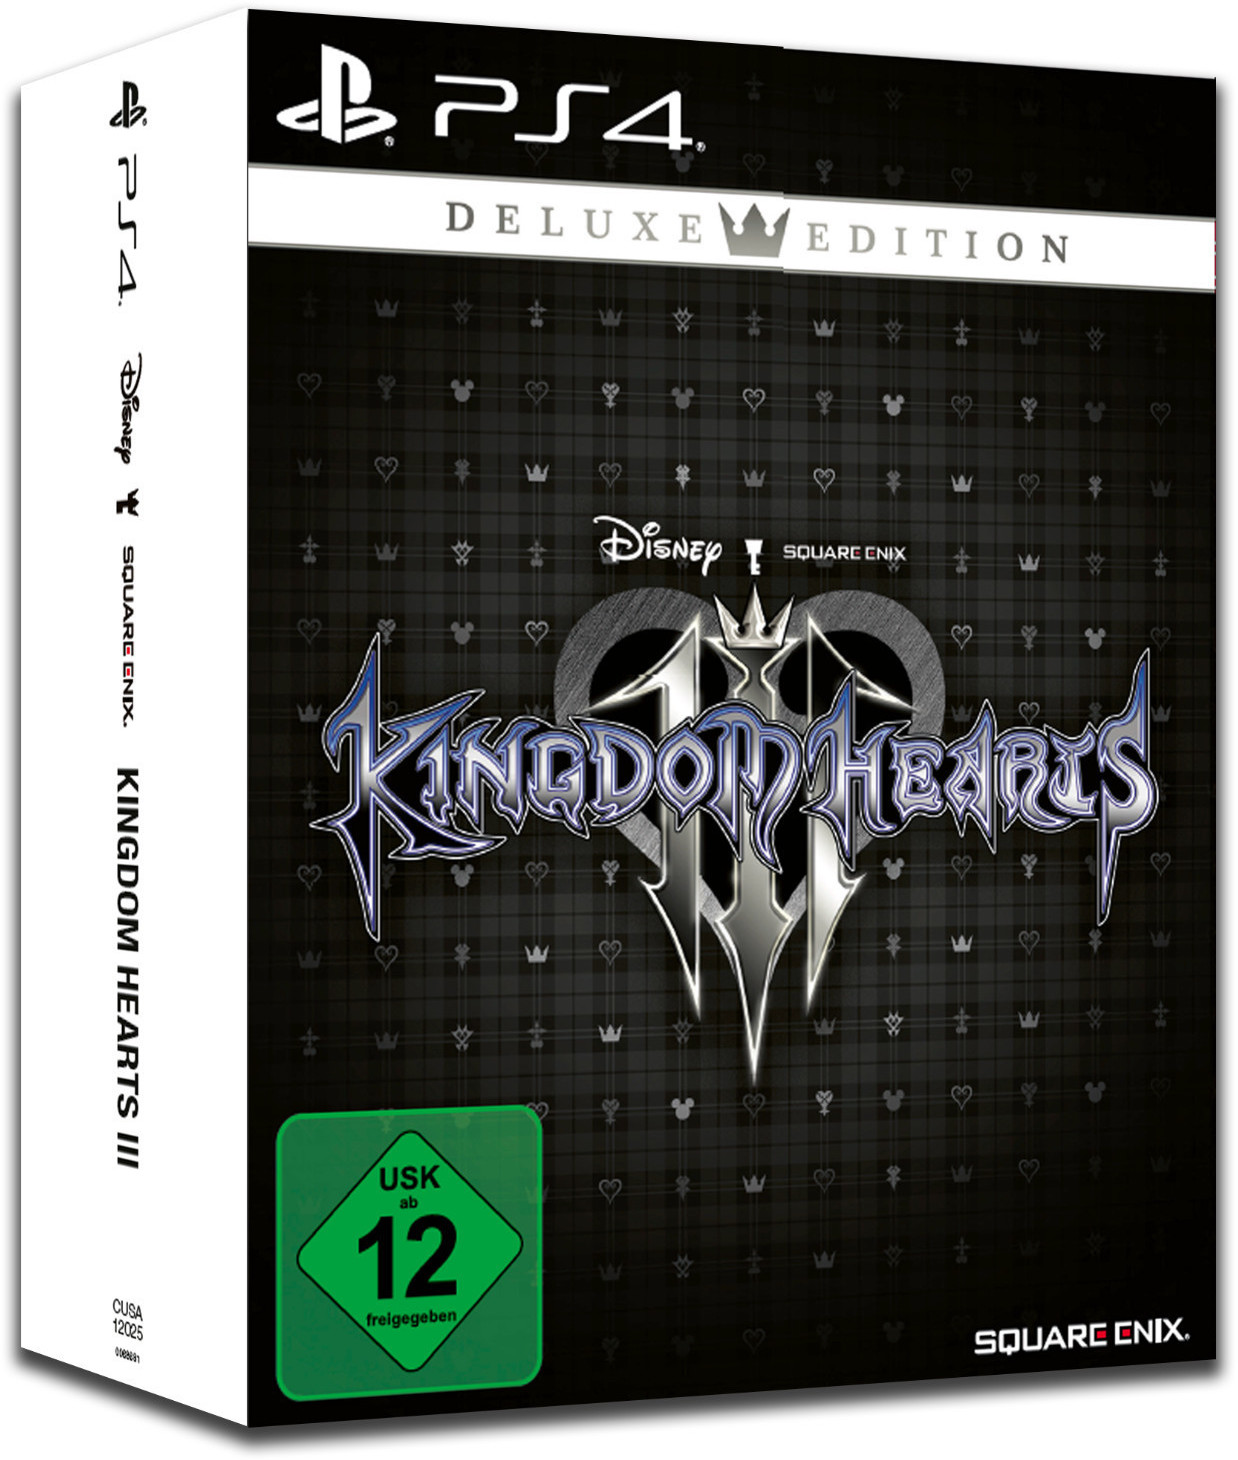 kingdom hearts 3 deluxe edition + bring arts figures